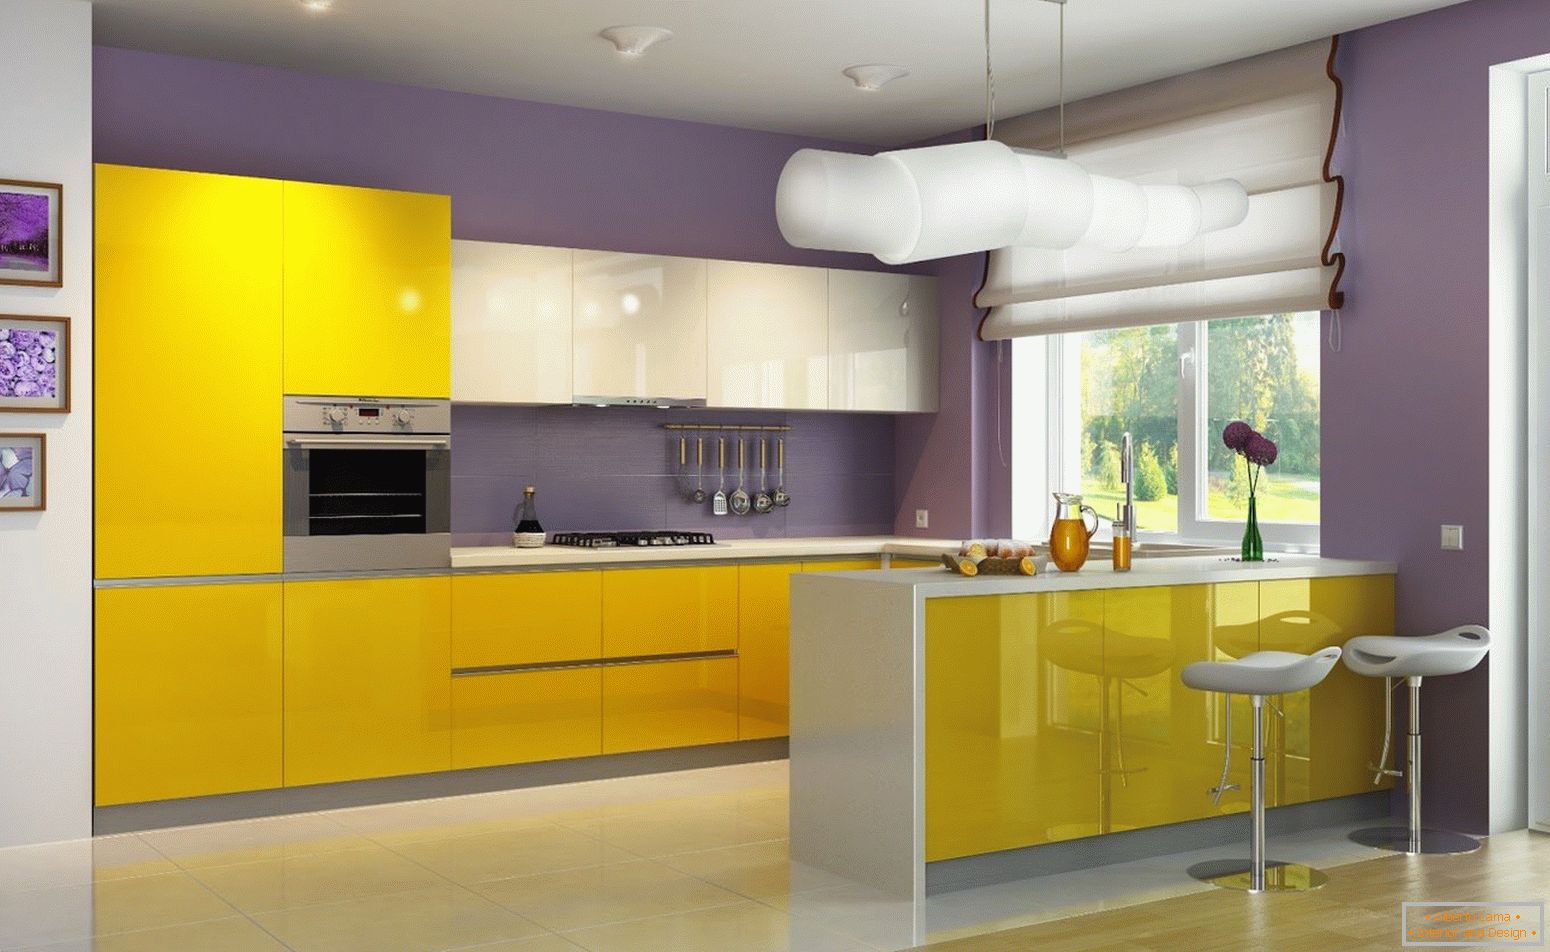 Поєднання жовтого і фіолетового кольорів на кухні